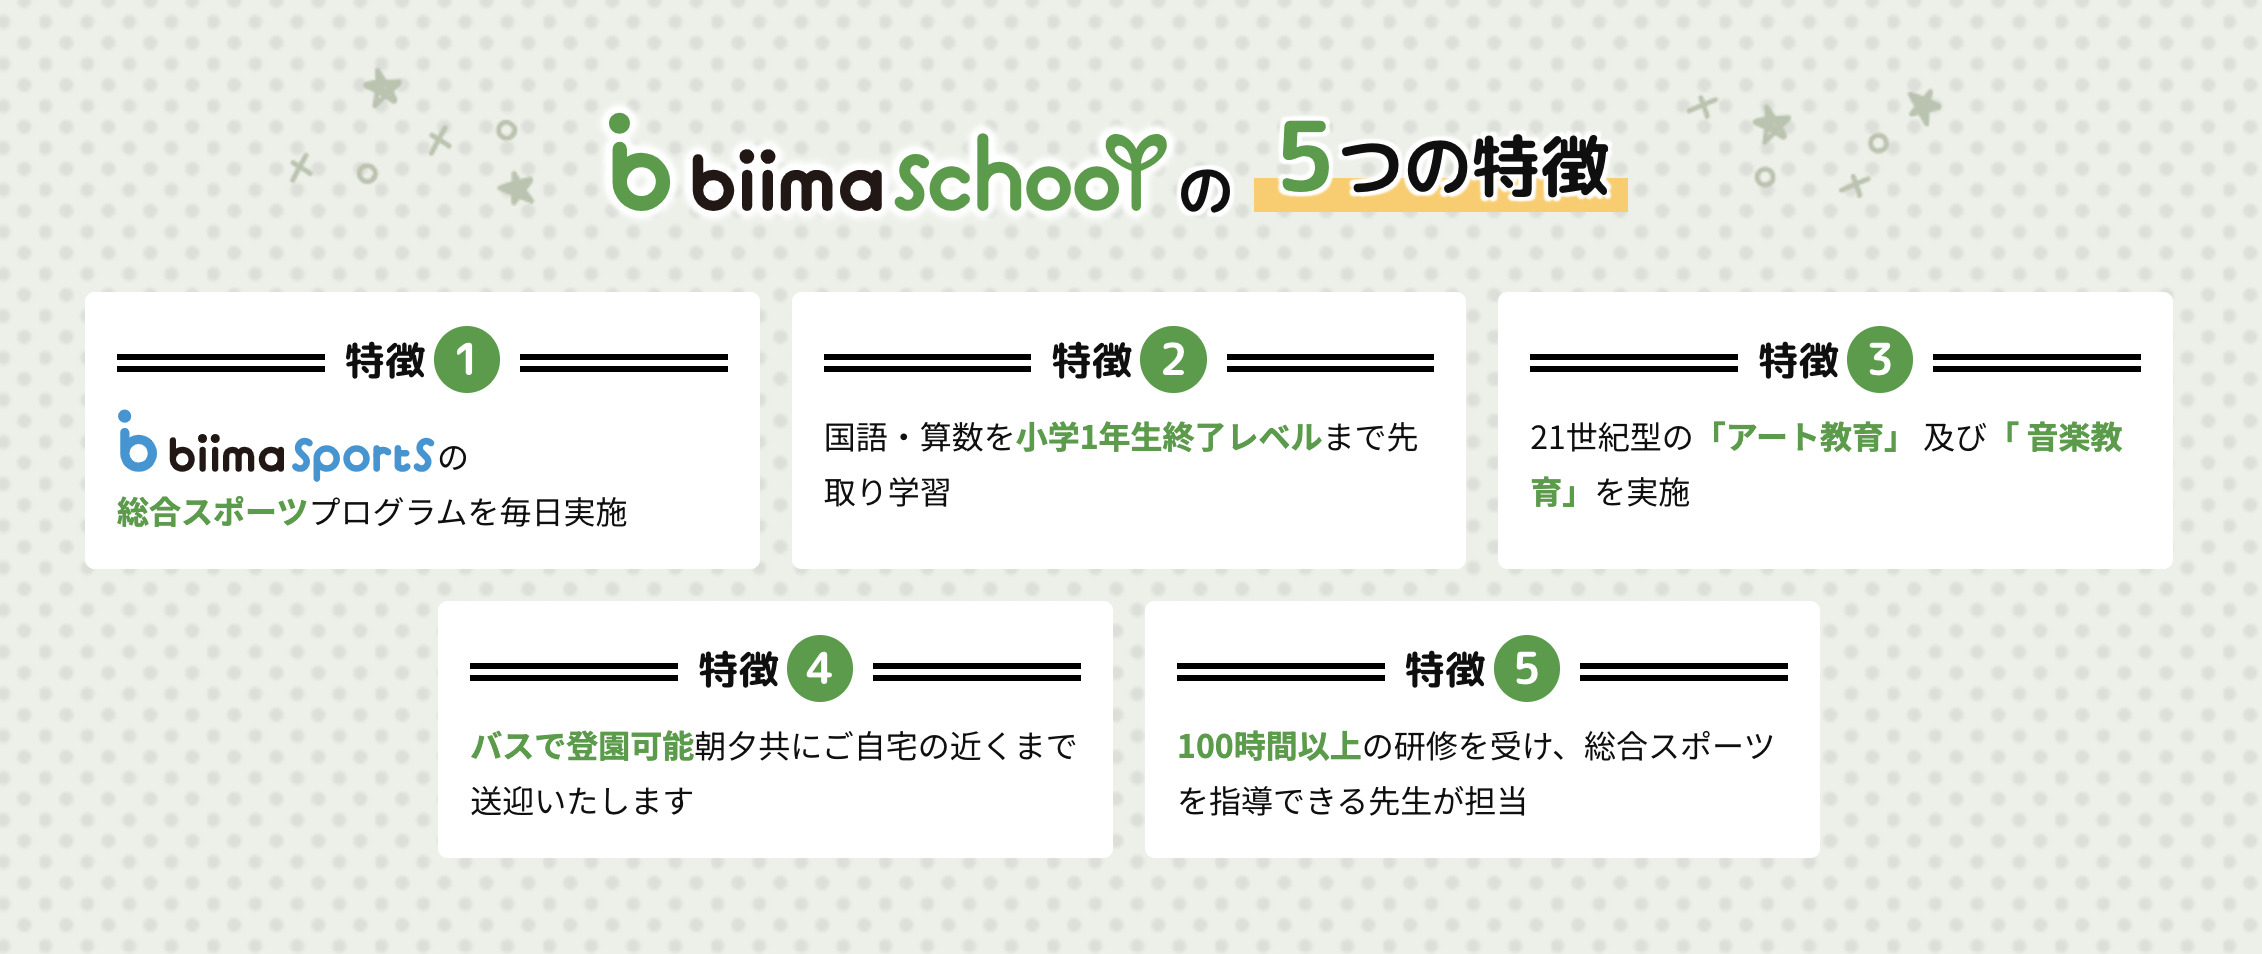 biima school（ビーマスクール）吉祥寺校